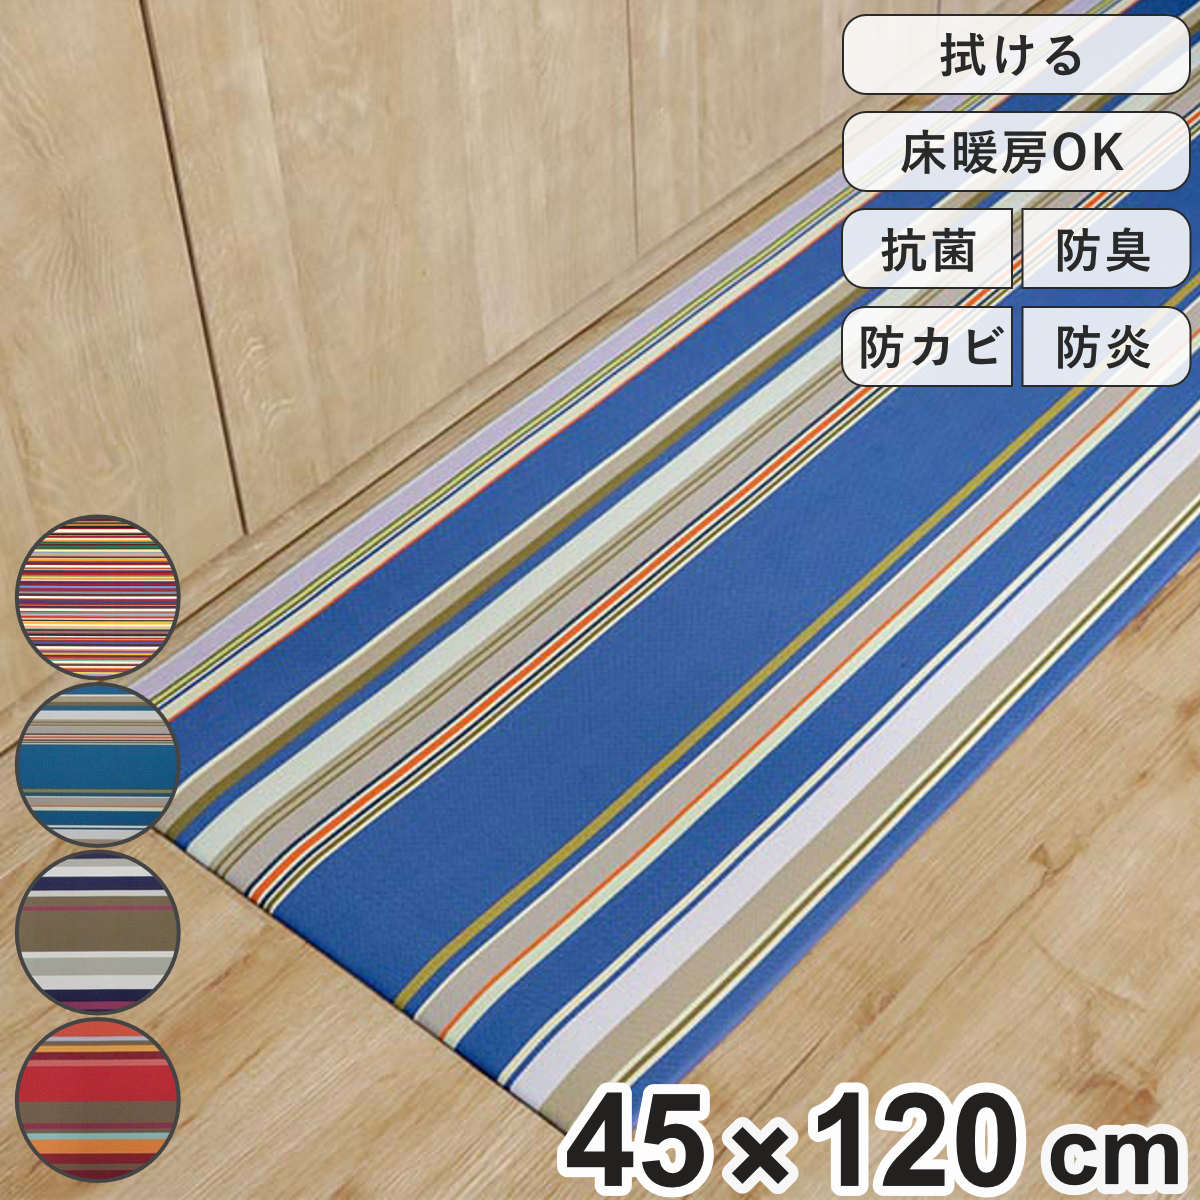 キッチンマット 45×120cm PVC 拭けるキッチンマット レ・トワール・デュ・ソレイユ